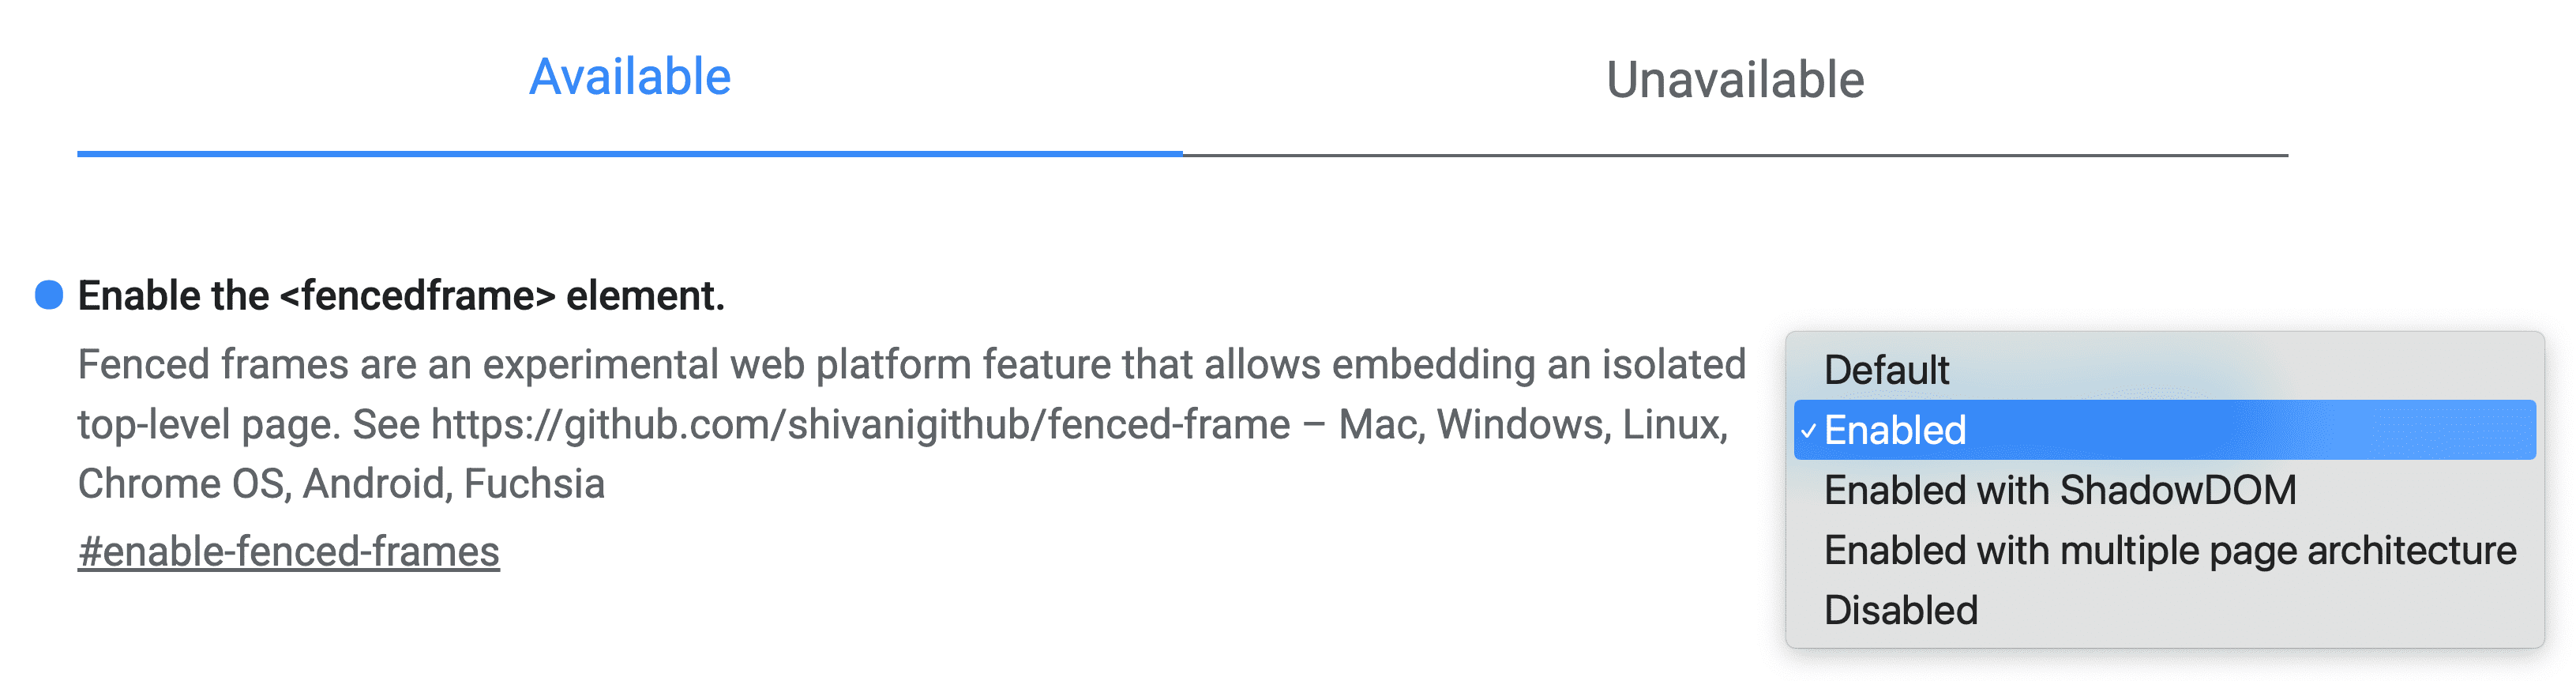 בניסויים של Chrome, יש להגדיר את האפשרות &#39;מופעל&#39; עבור הדגל שנקרא &#39;הפעלת רכיב המסגרת של Fenced frame&#39;